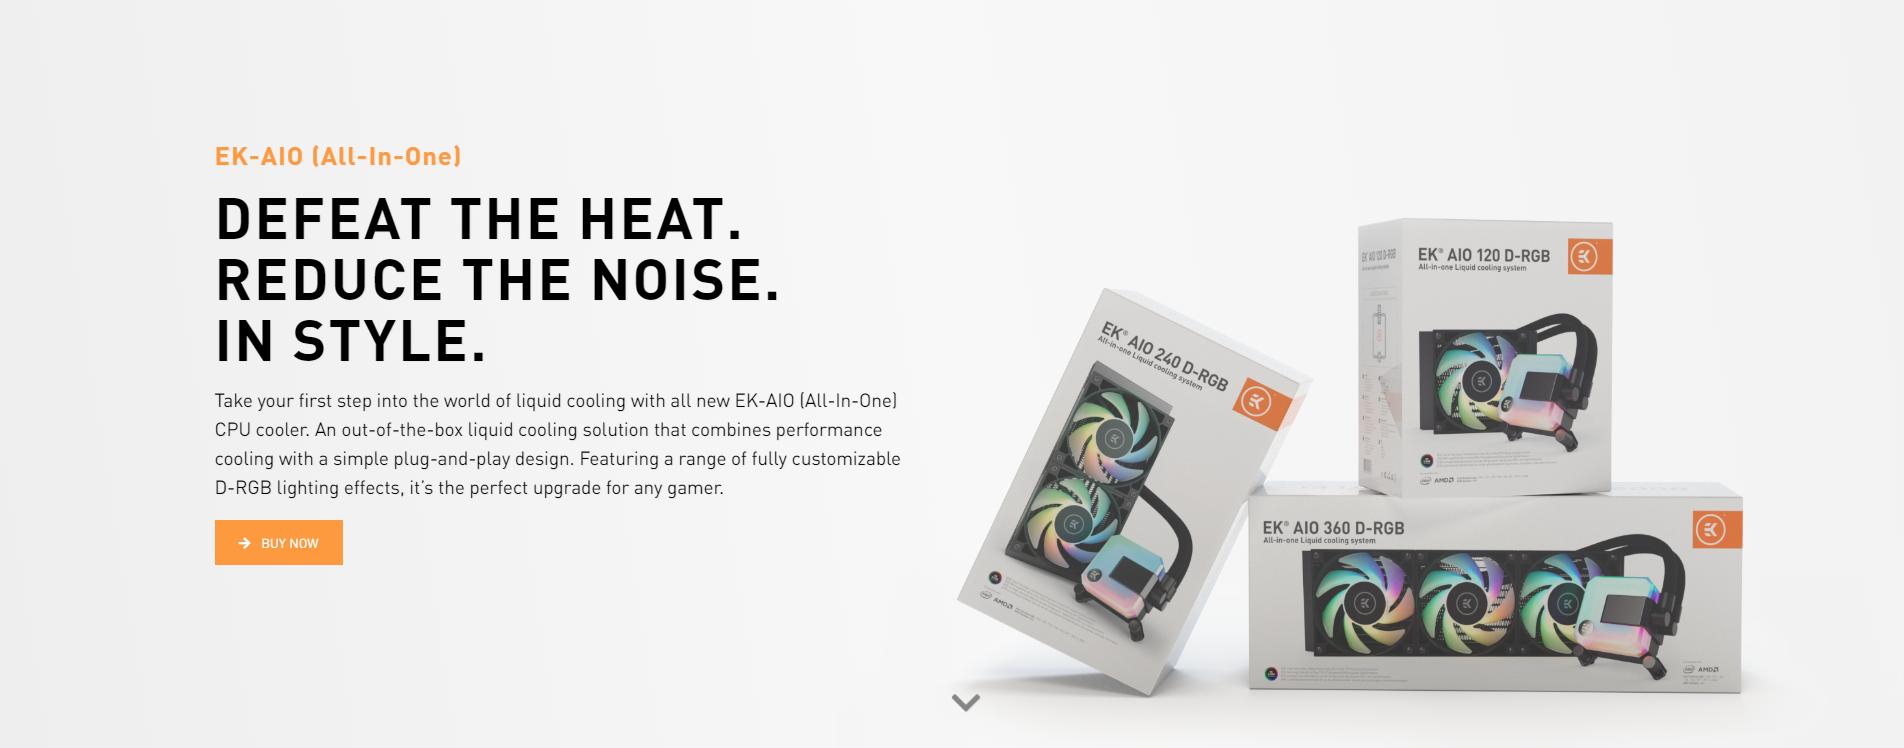 Tản nhiệt nước EK-AIO 360 D-RGB Đánh bại nhiệt độ - Giảm thiểu độ ồn - Mang đến phong cách riêng